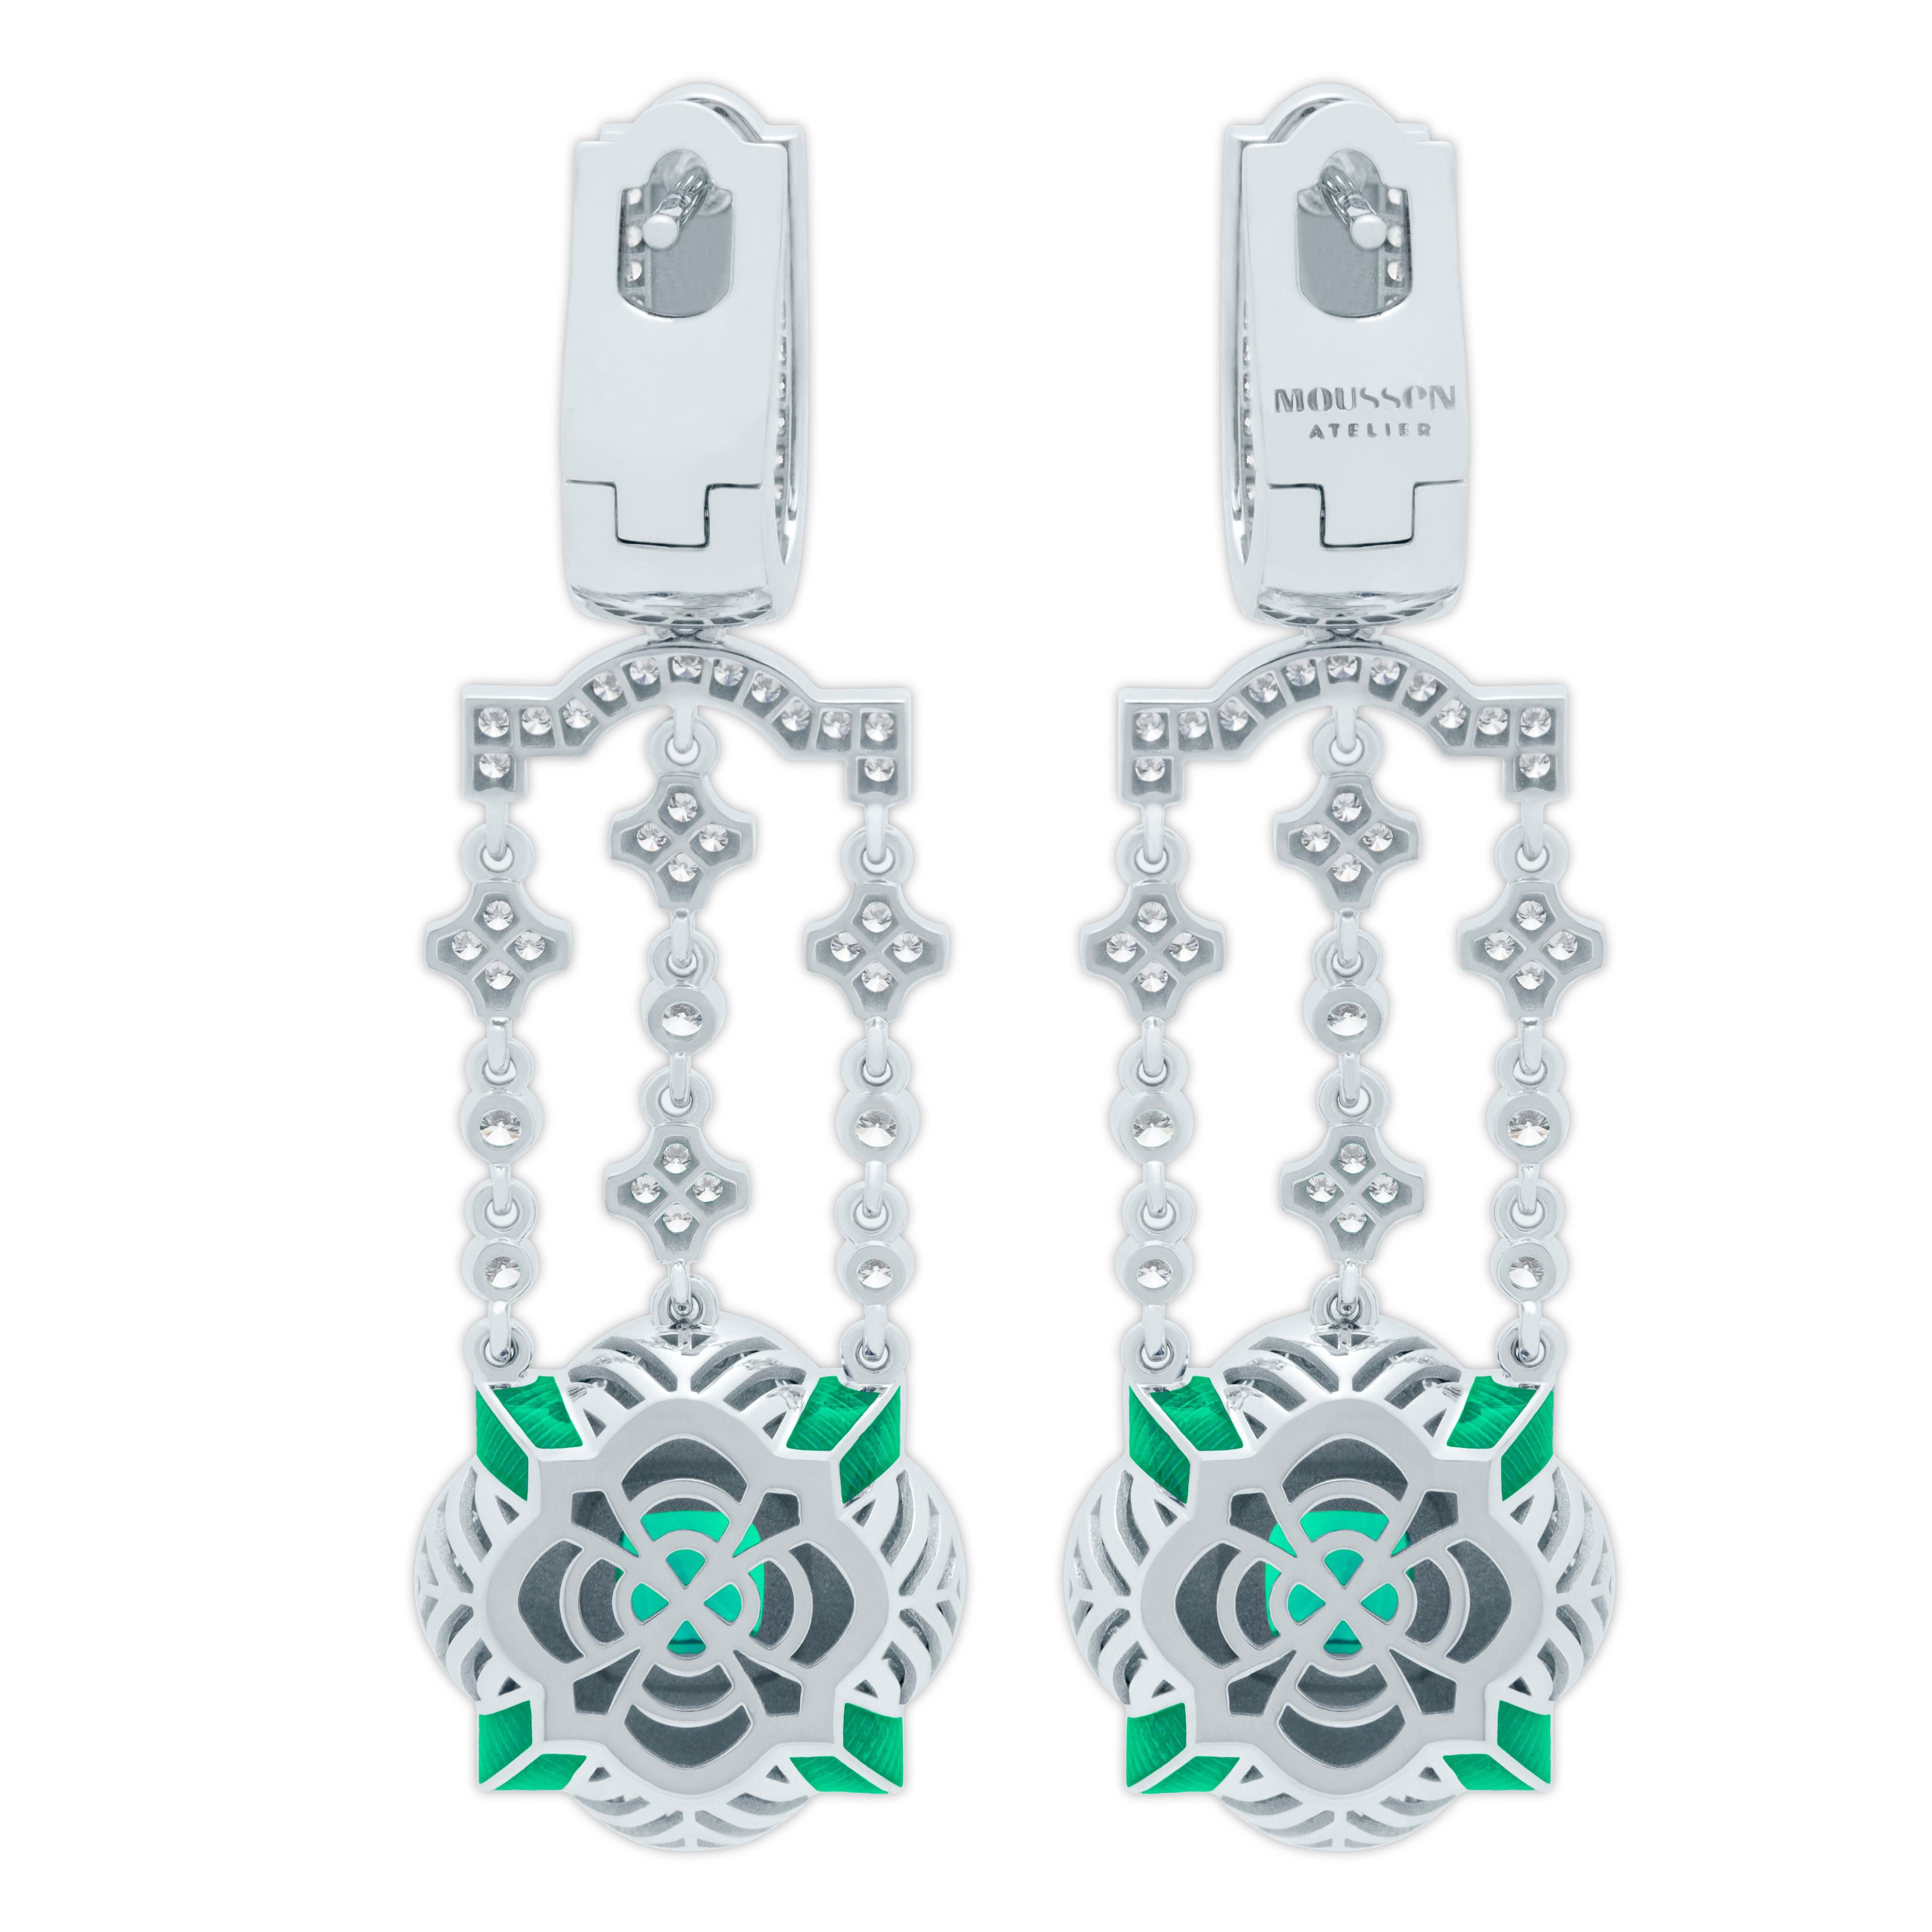 Emeralds Diamonds Enamel 18K White Gold Earrings
Designers again beat our trademark 